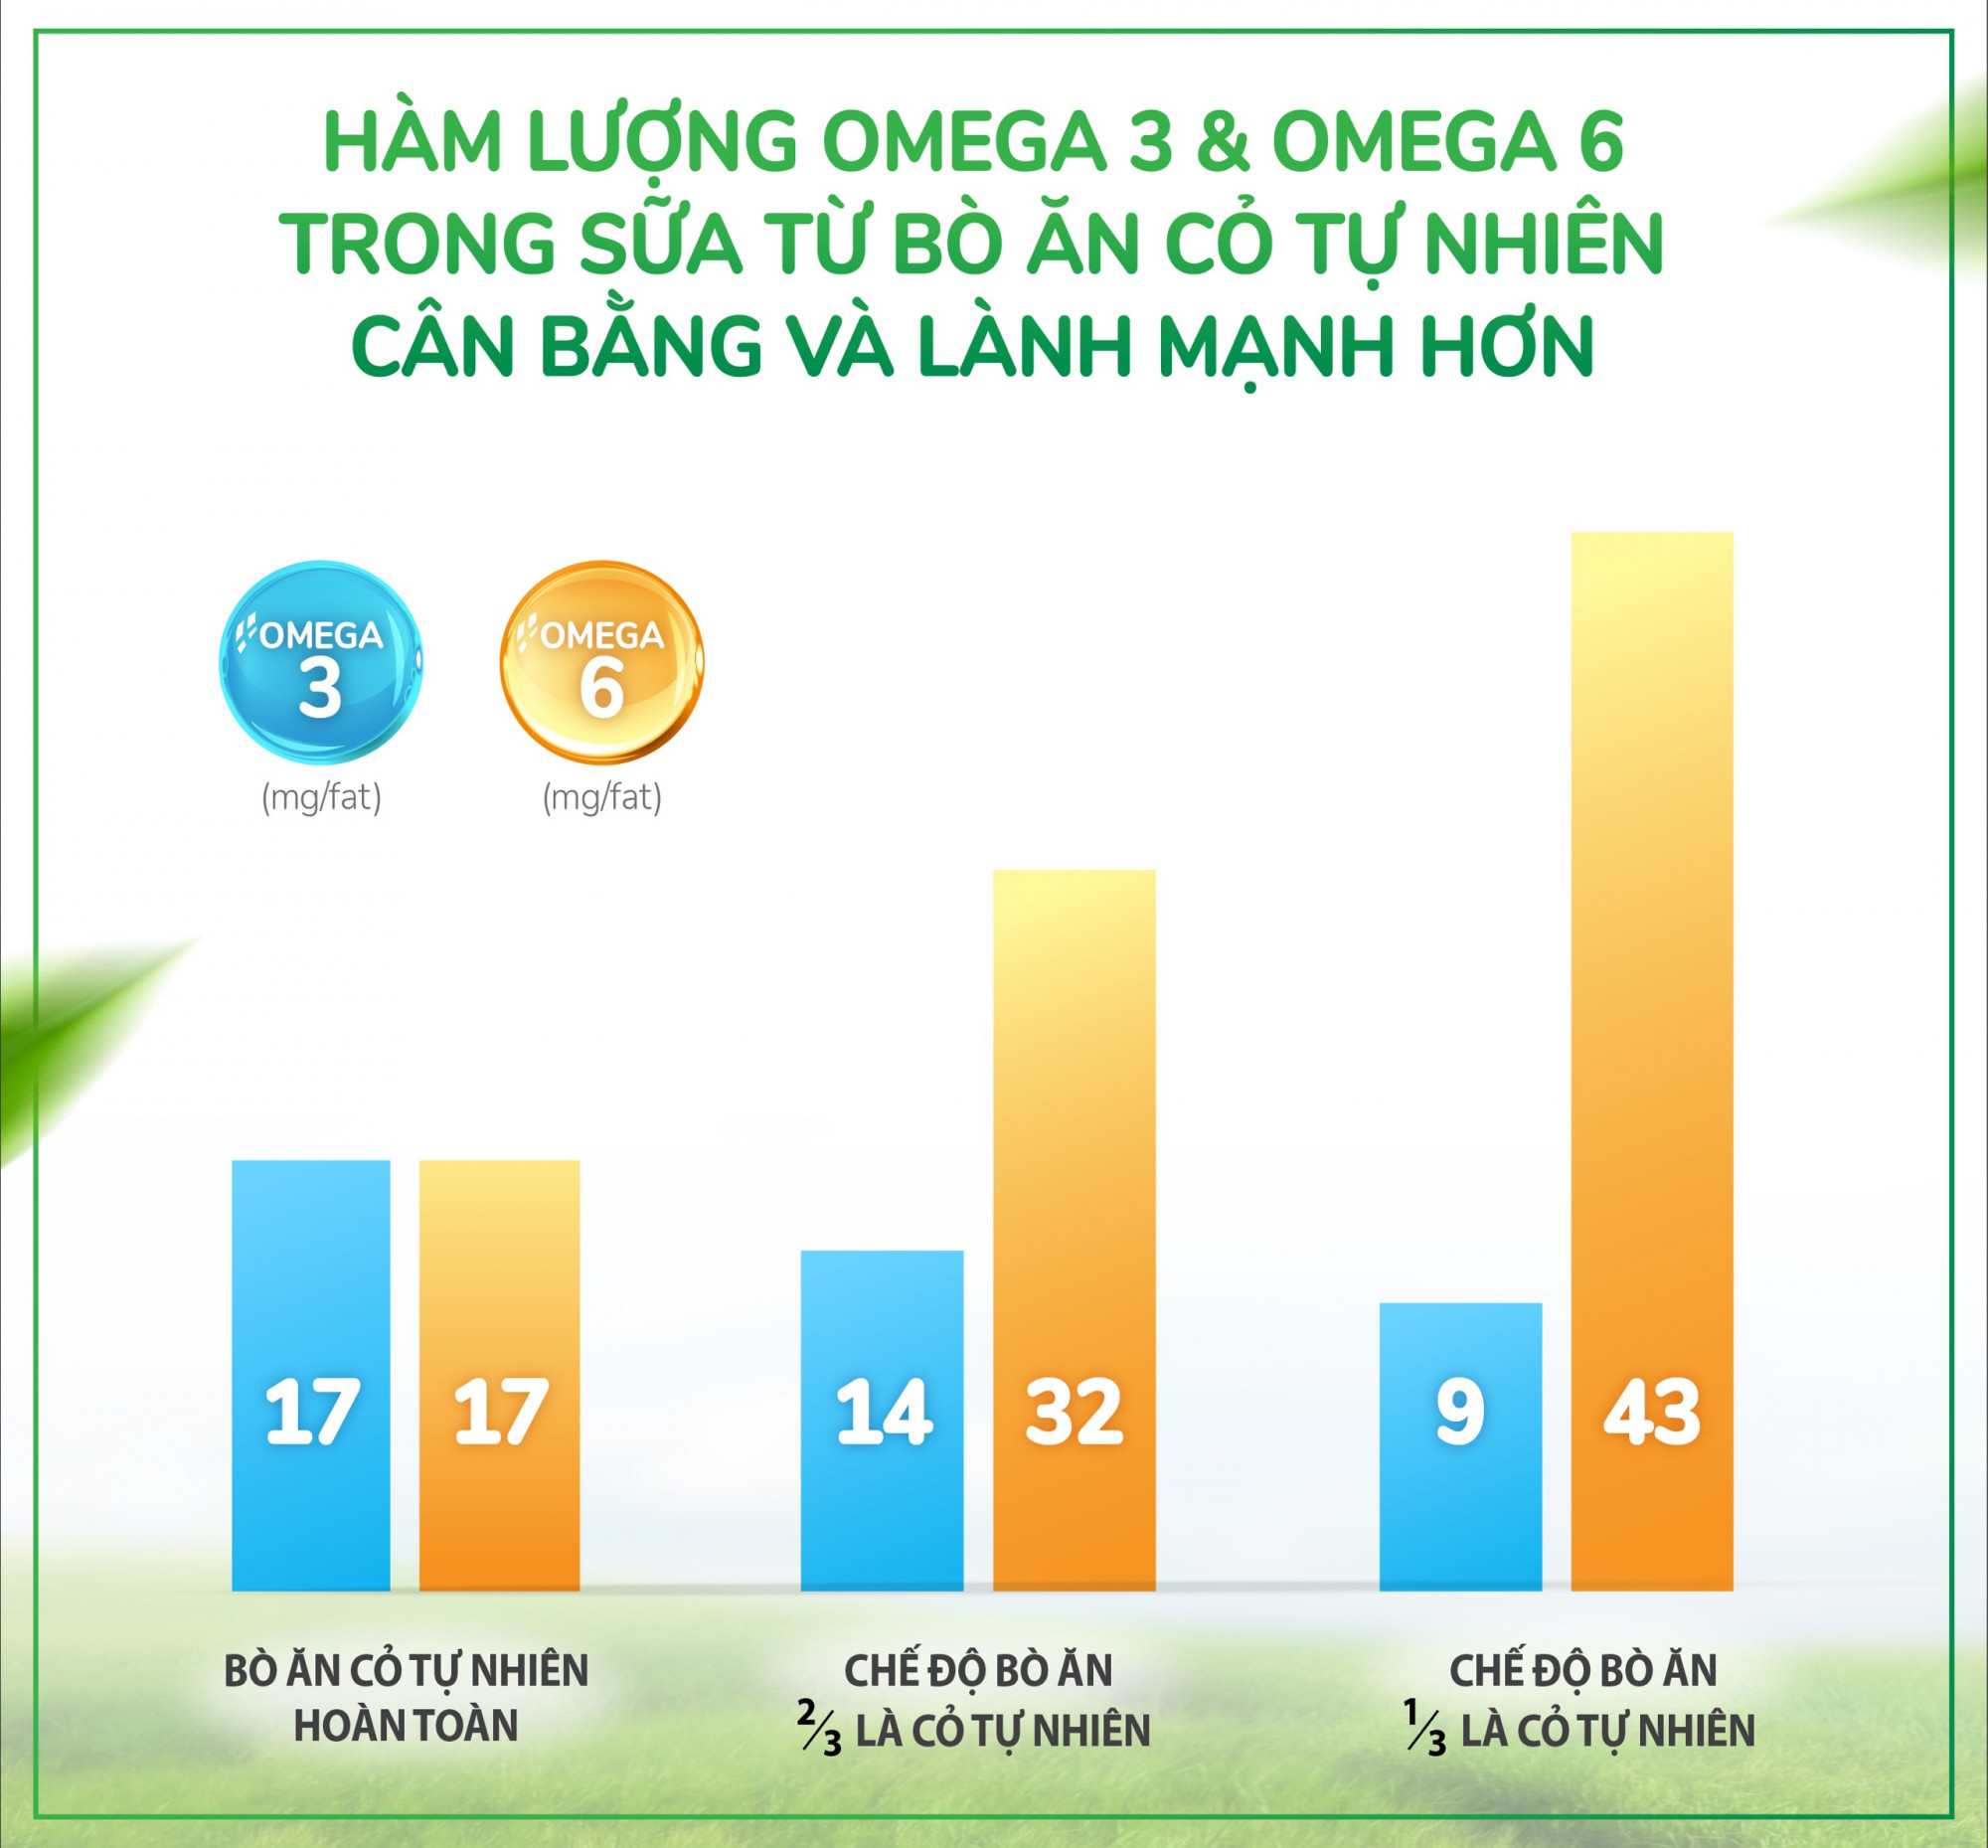 So sánh tỷ lệ Omega 3 và Omega 6 trong sữa từ bò ăn cỏ tự nhiên 